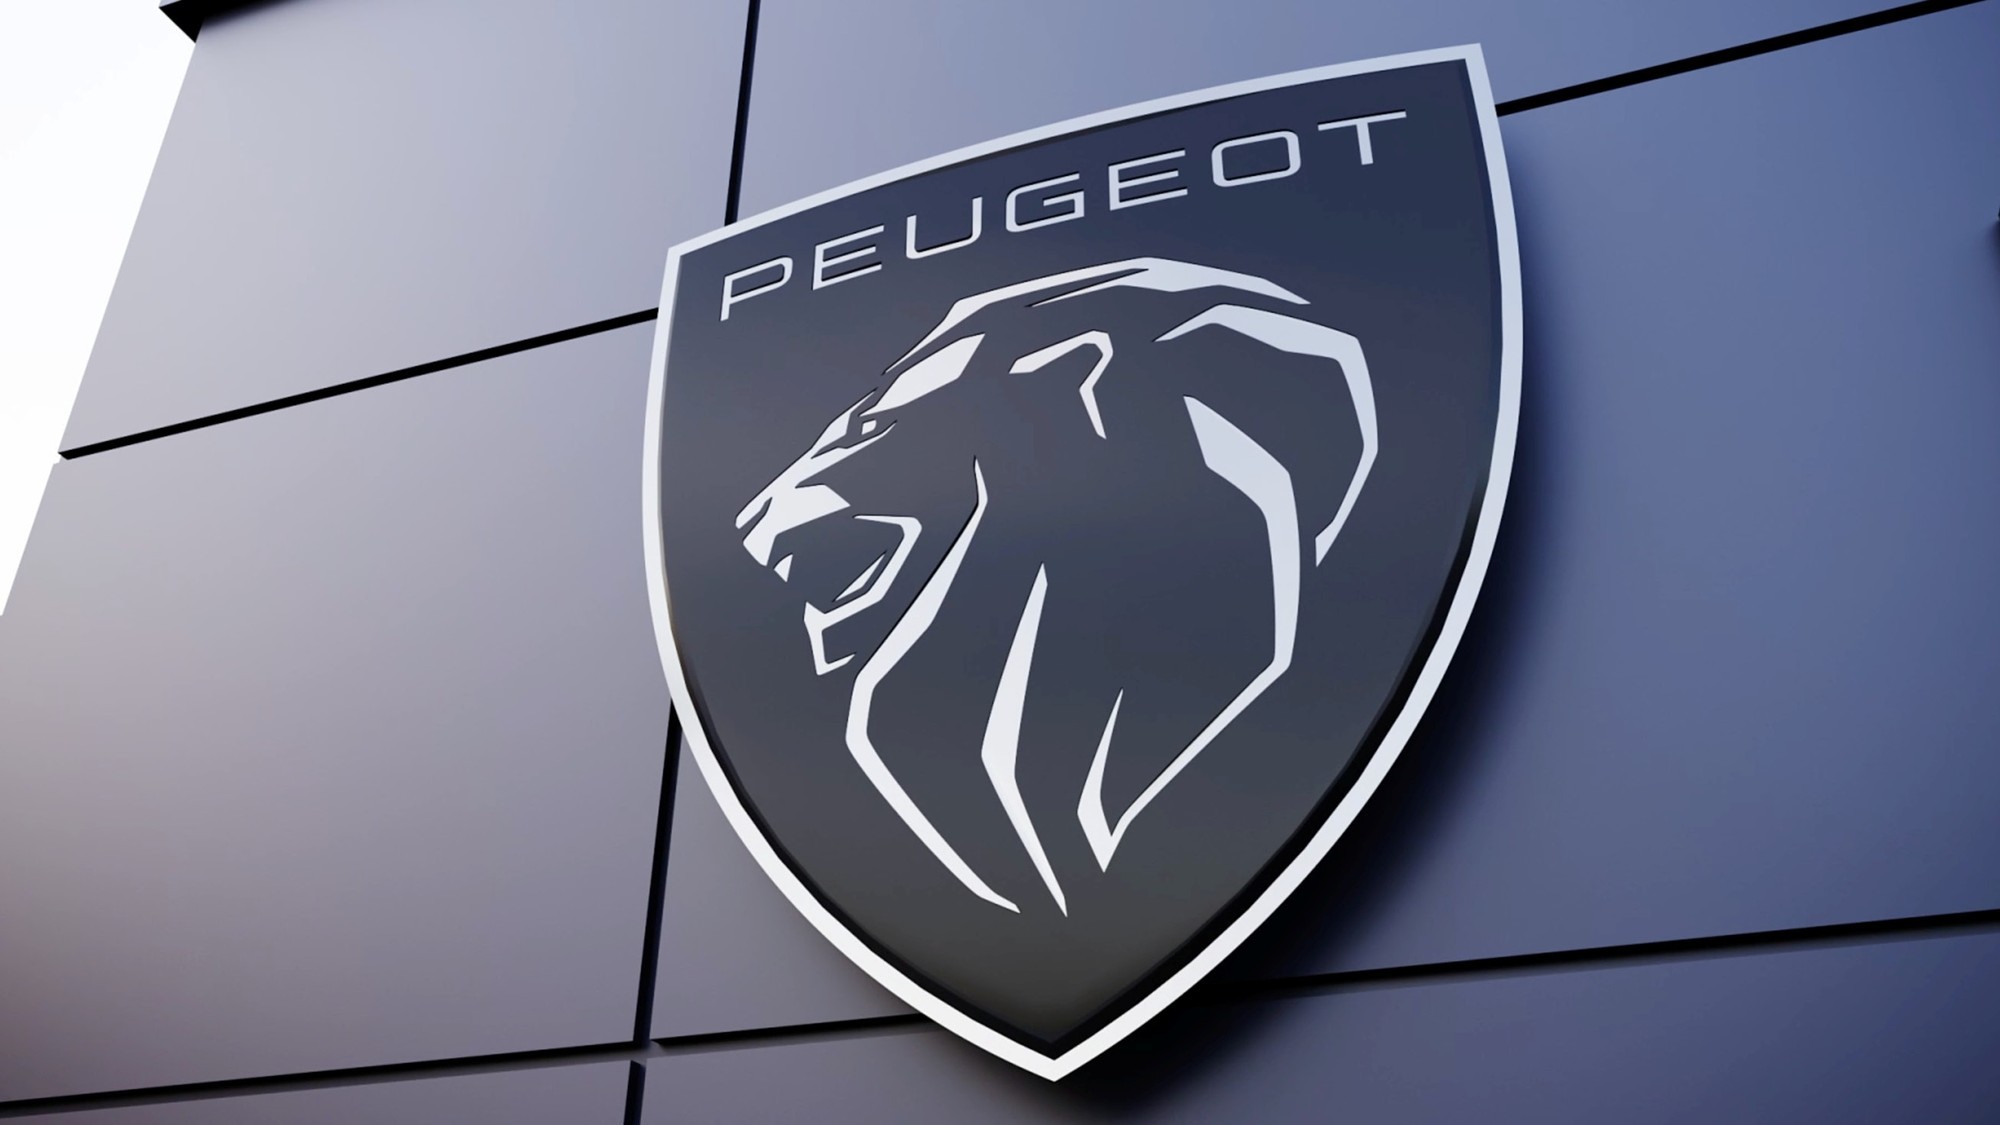 Новая эмблема Peugeot: льва опять лишили туловища и подняли на щит